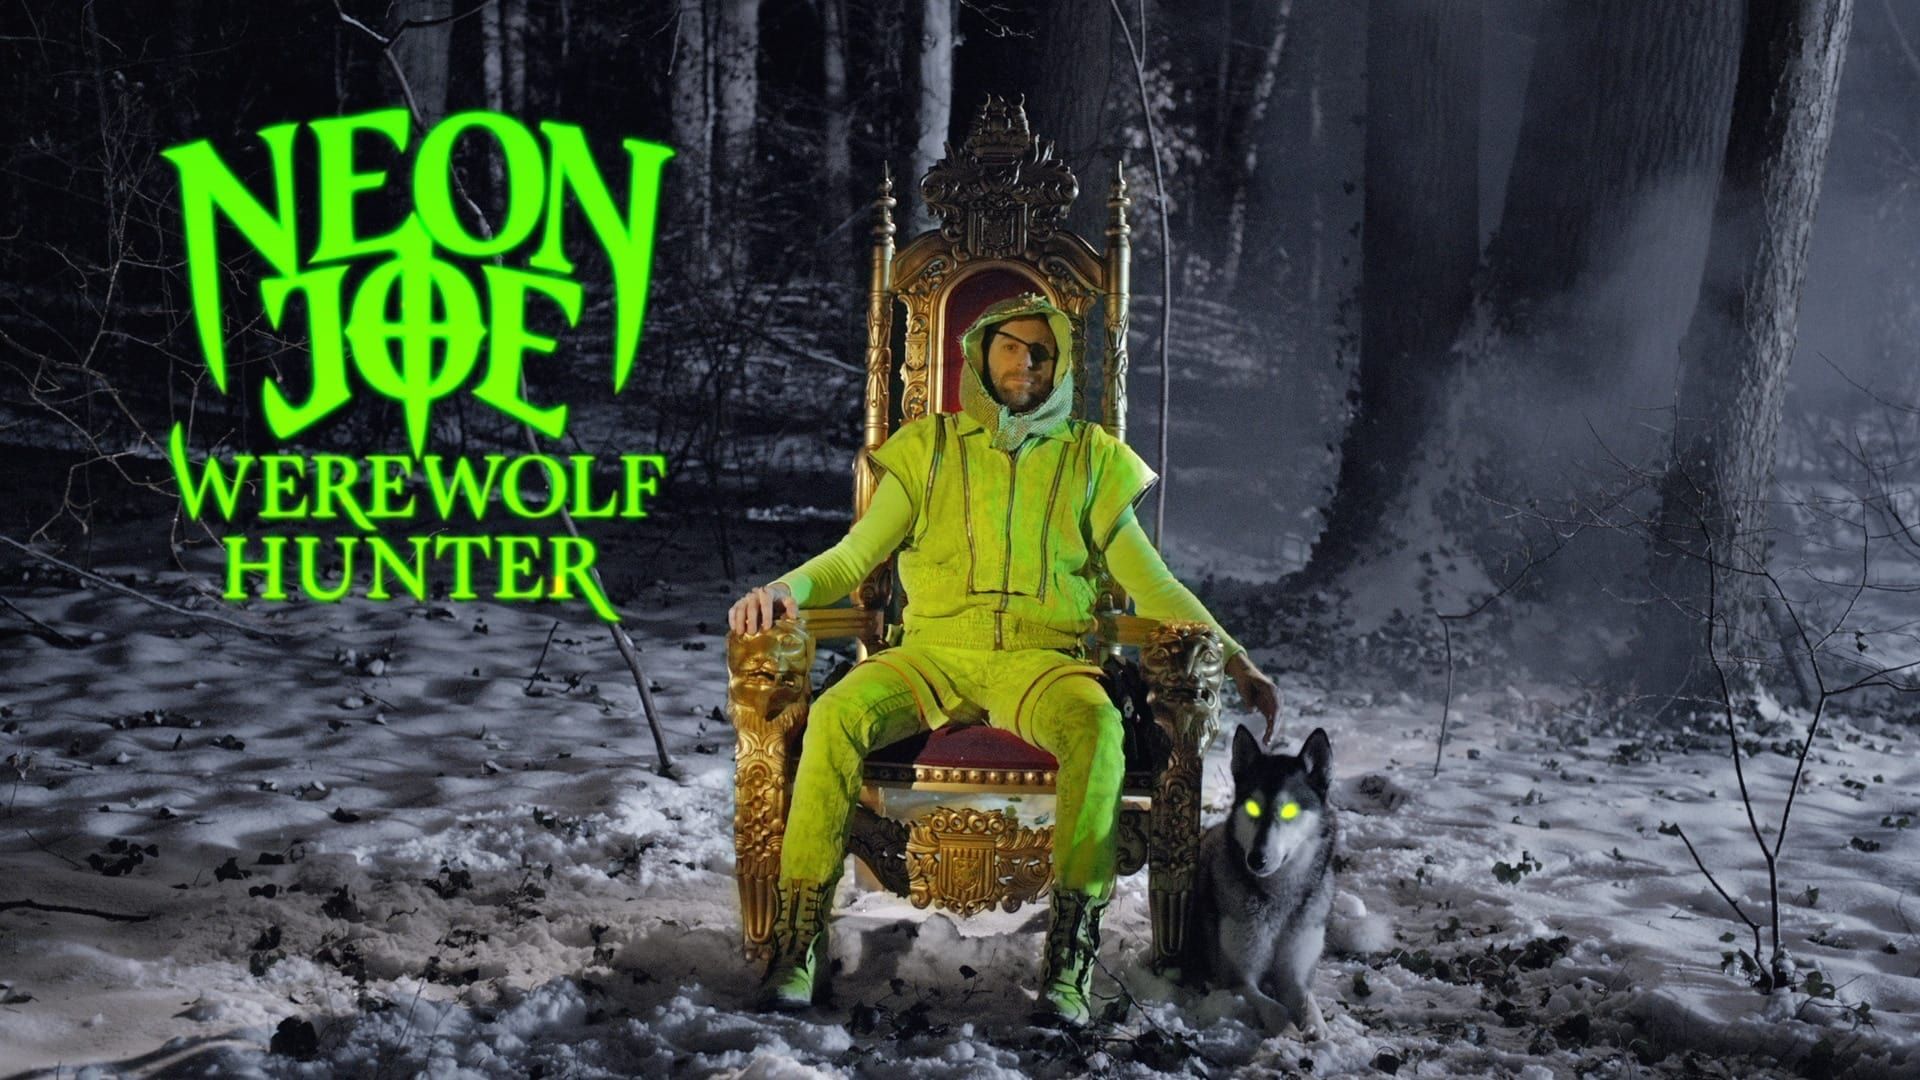 Neon Joe, Werewolf Hunter background